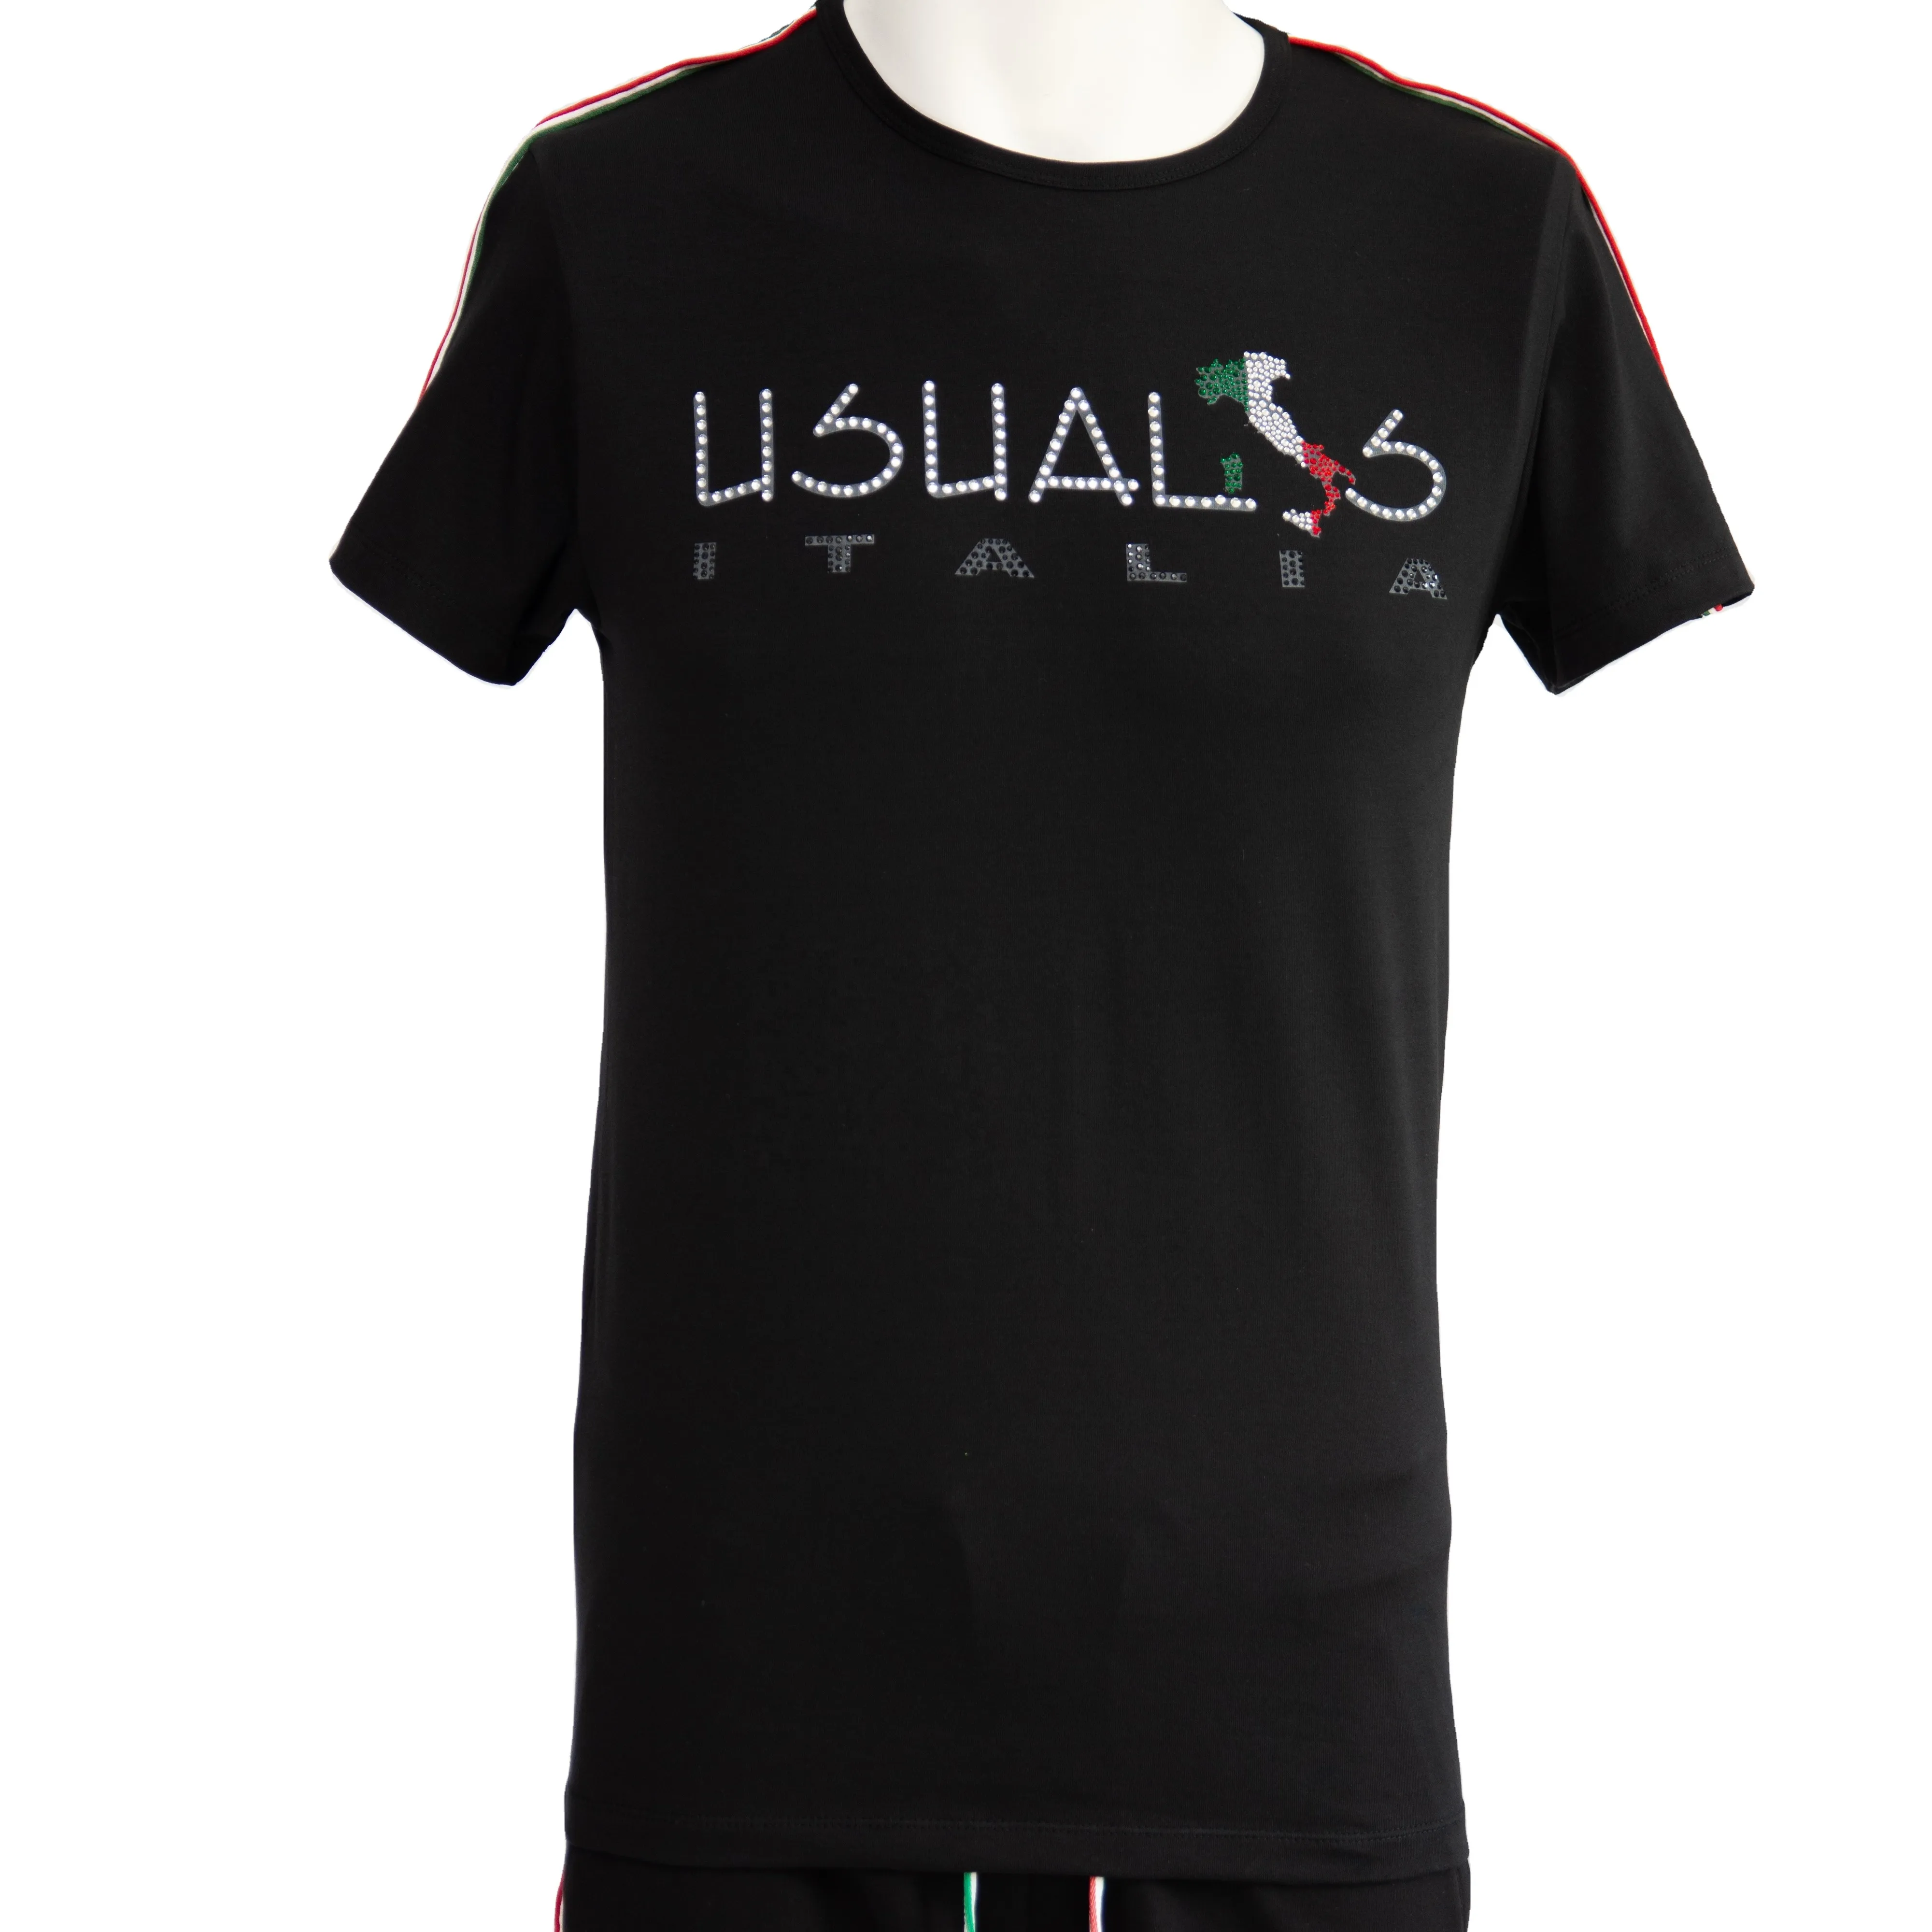 Camiseta masculina de manga curta, primavera verão 2023 puro preto de algodão spandex com apliques brancos feita em itália